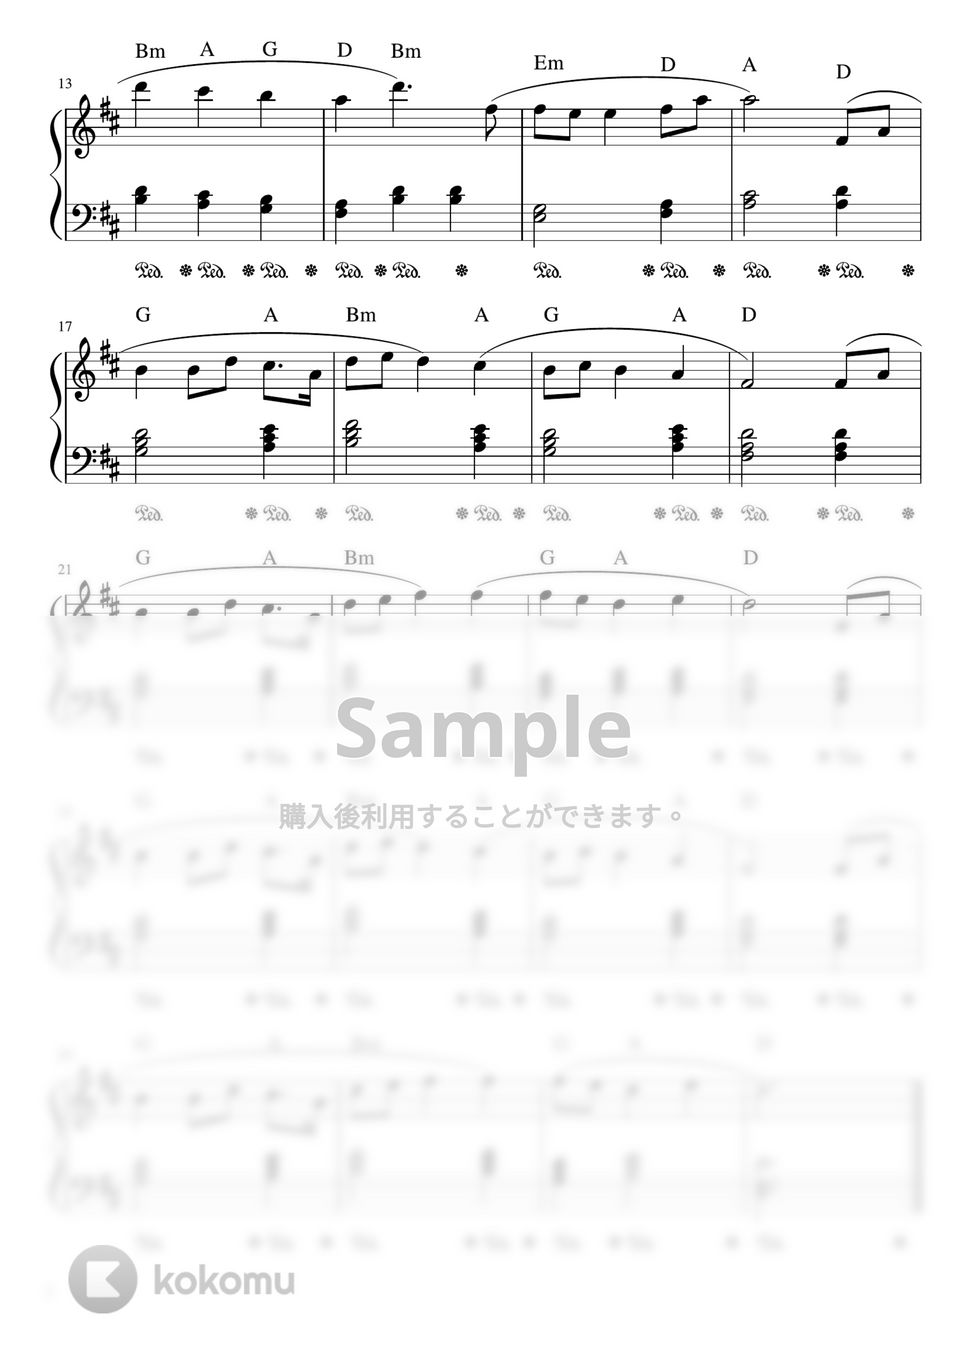 G.ホルスト - 惑星より「木星」 (D・ピアノソロ初級) by pfkaori